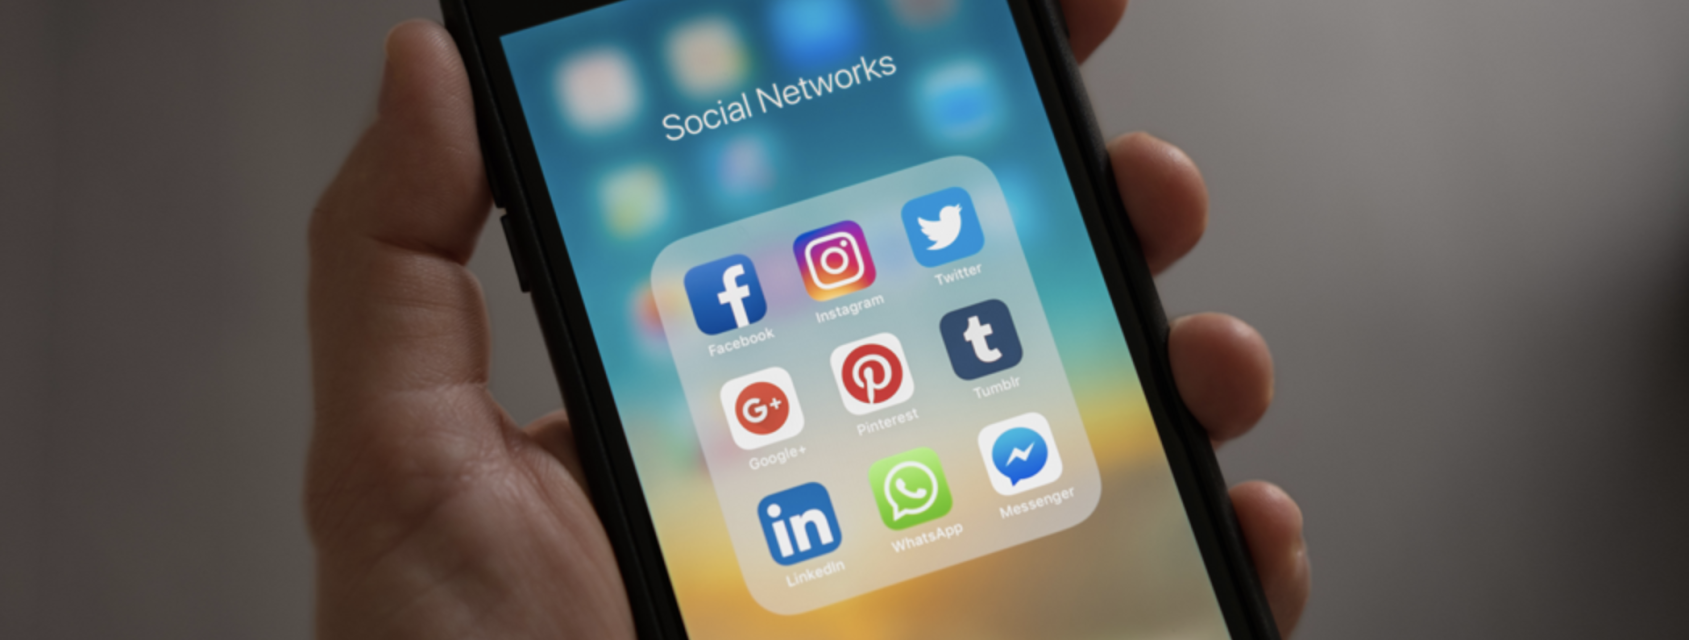 B2B marknadsföring på sociala medier: vilken strategi funkar 2018?